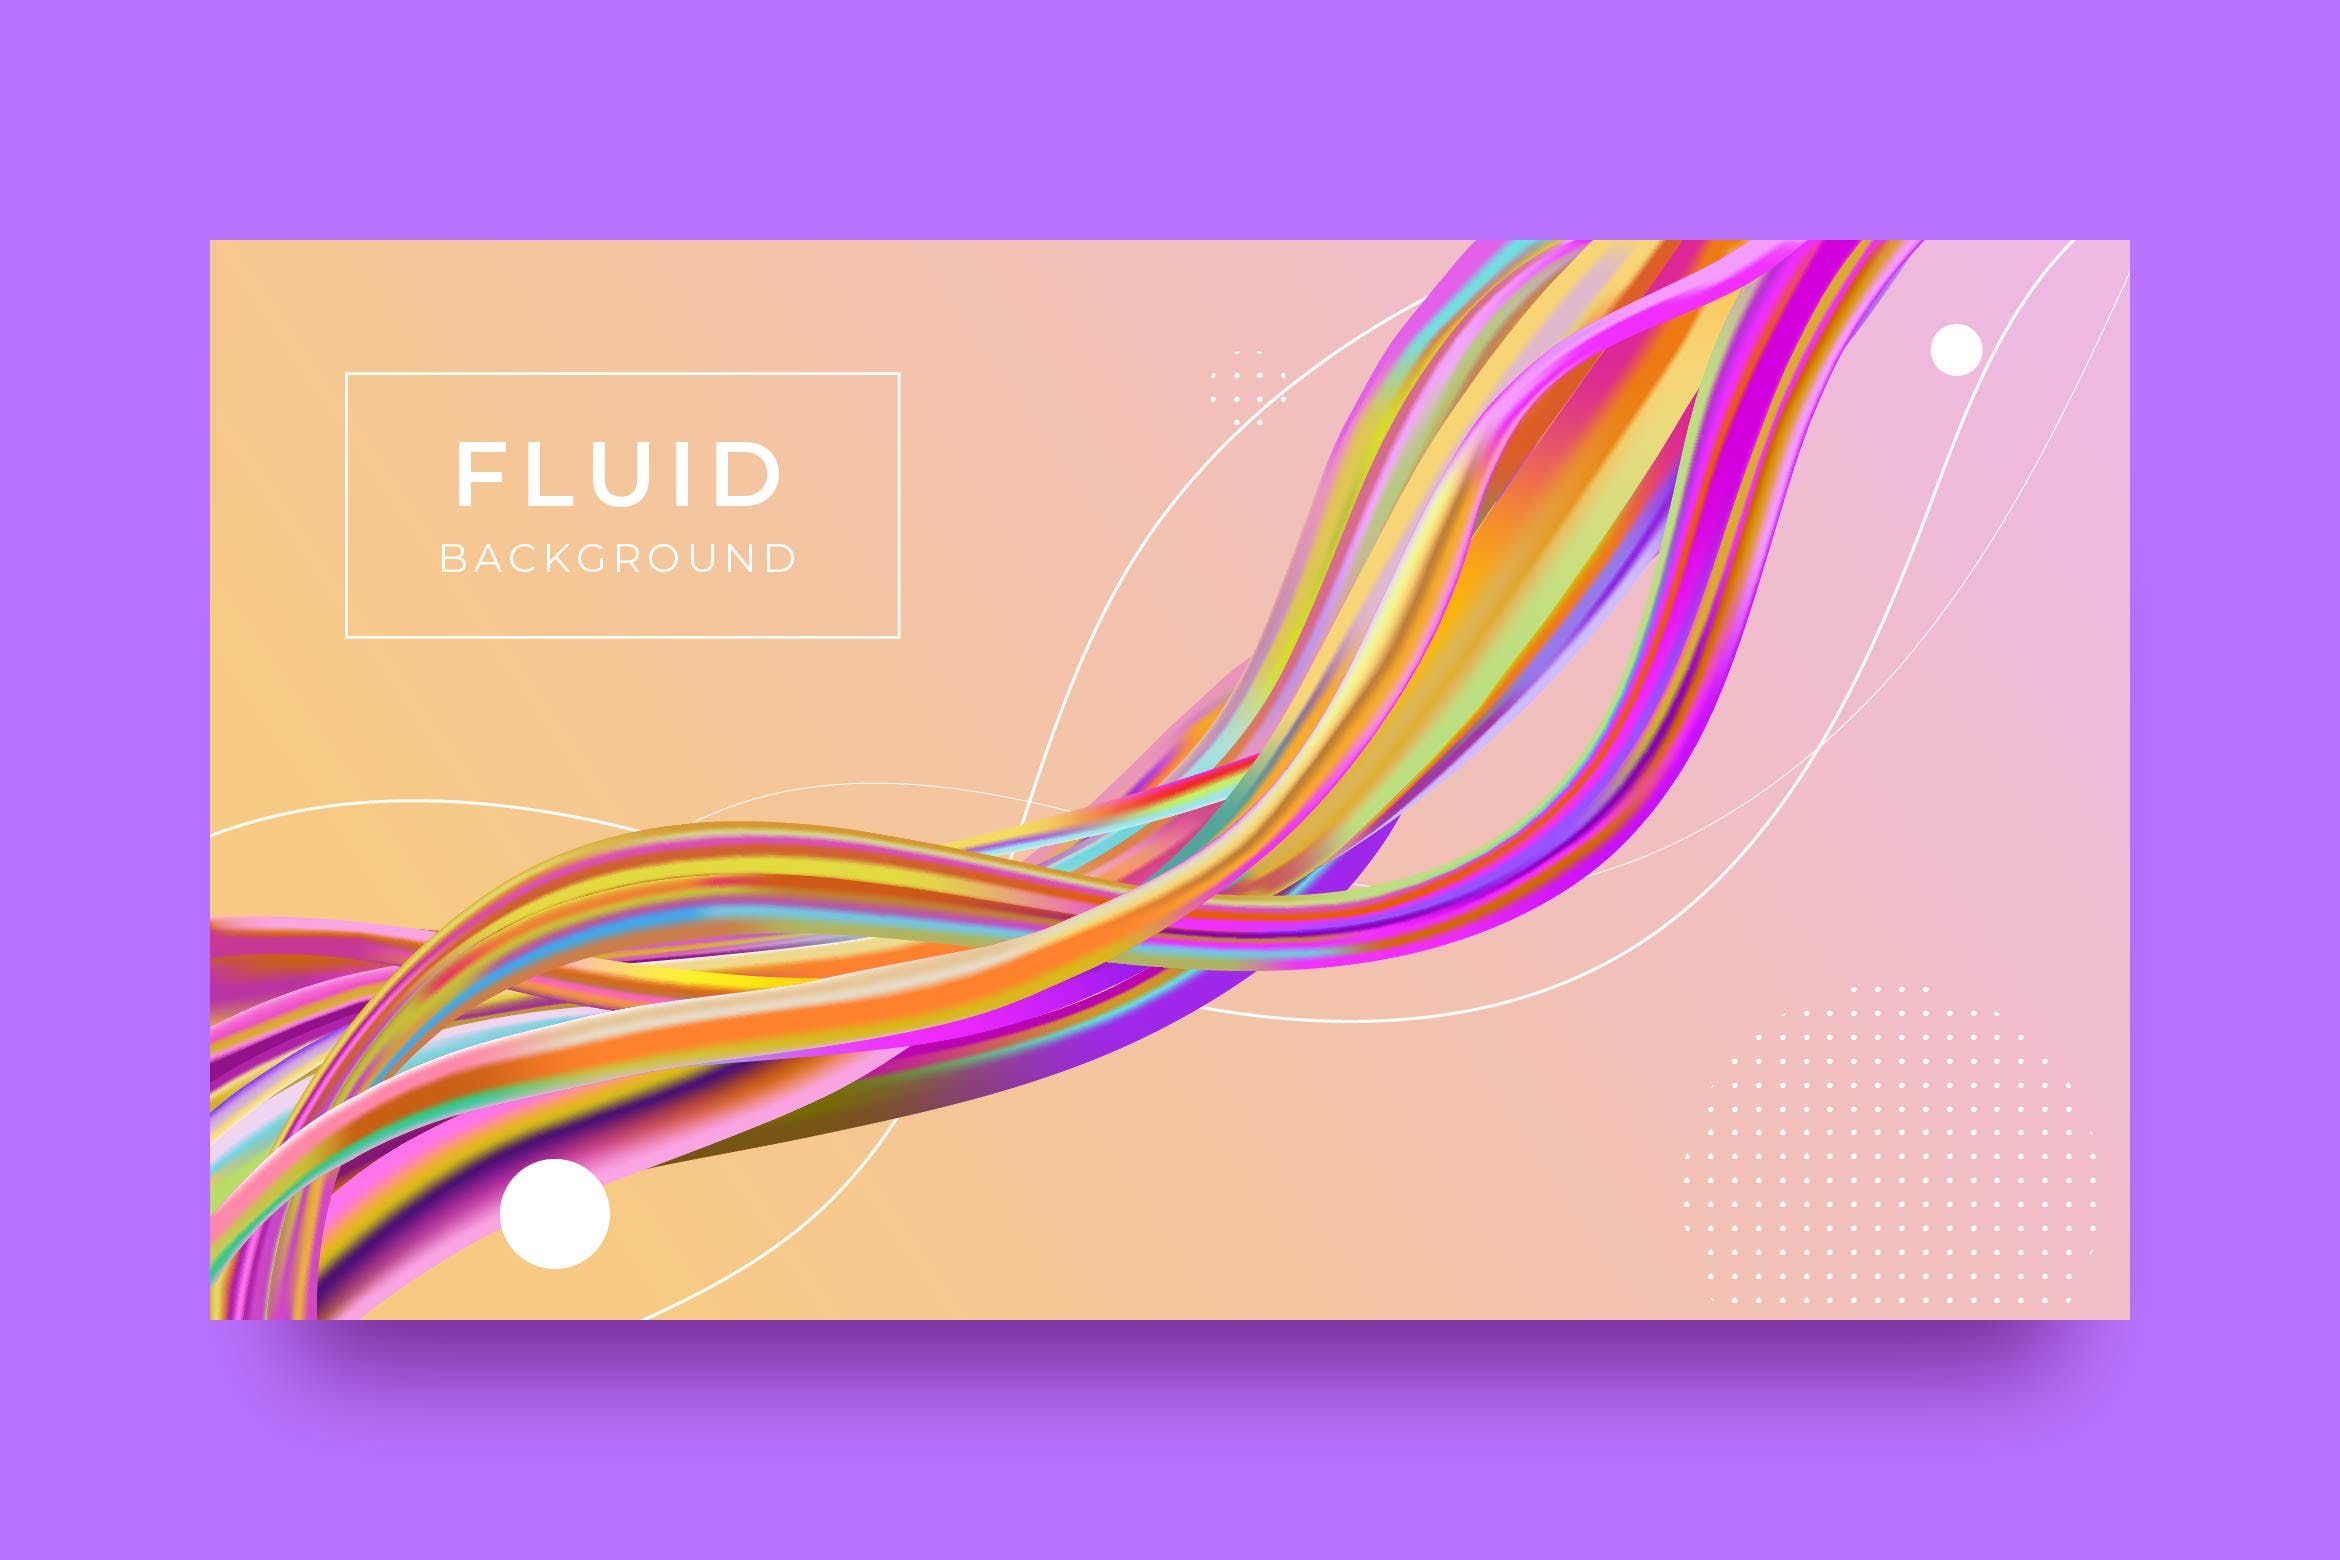 彩色液体抽象背景模板v4 Liquid Abstract Background 图片素材 第1张